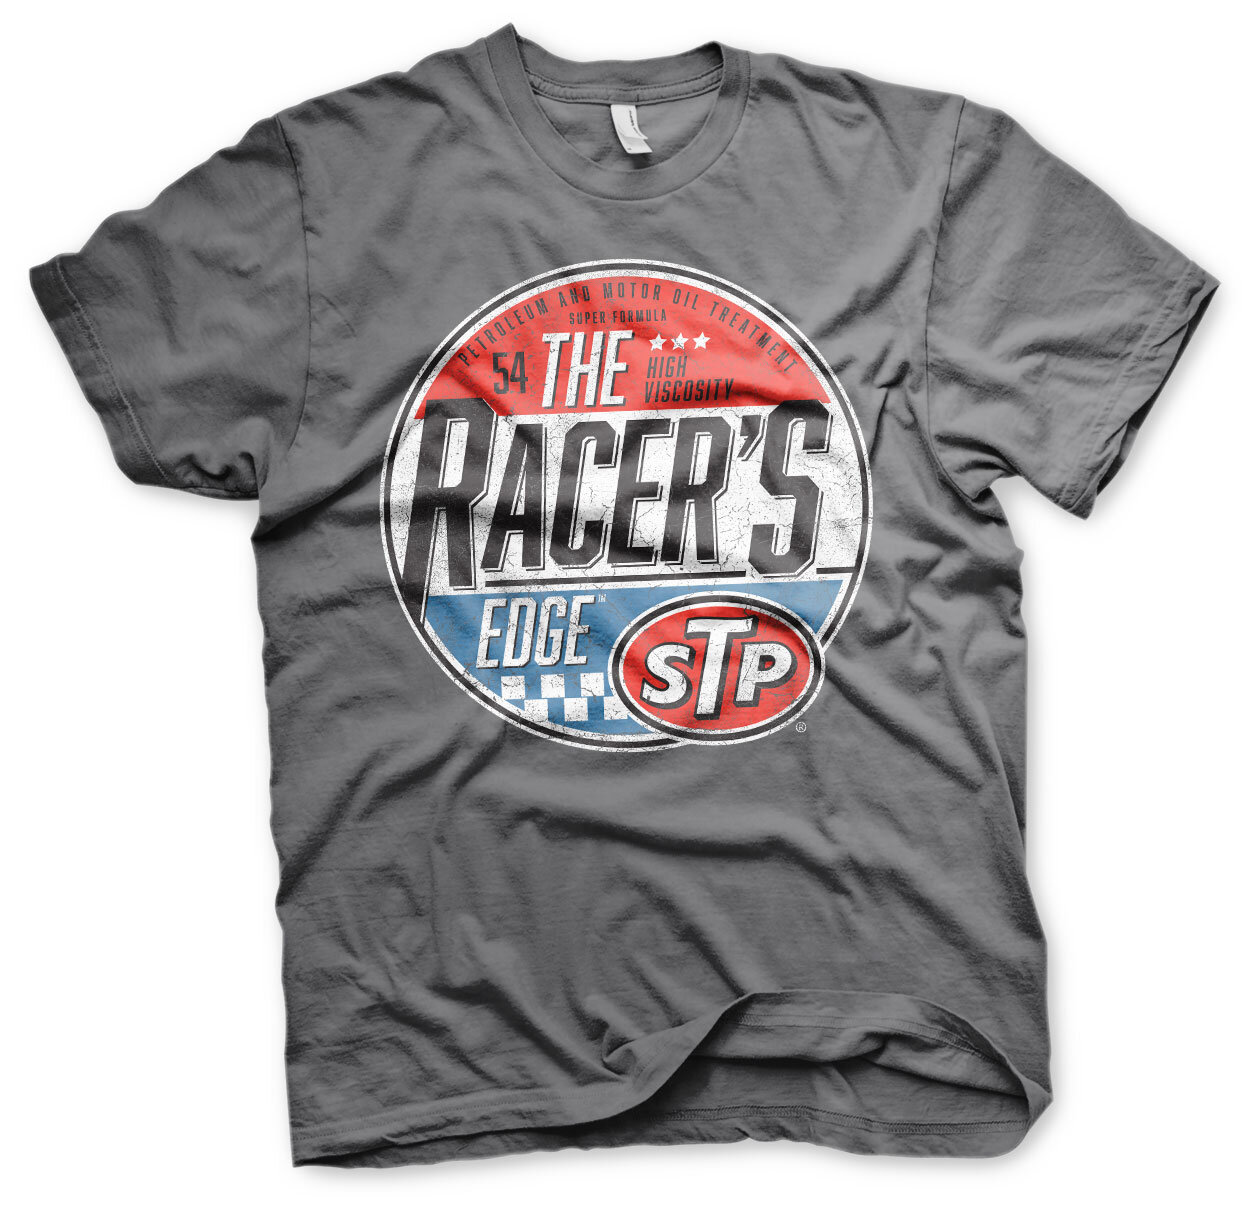 STP - The Racer's Edge T-Shirt